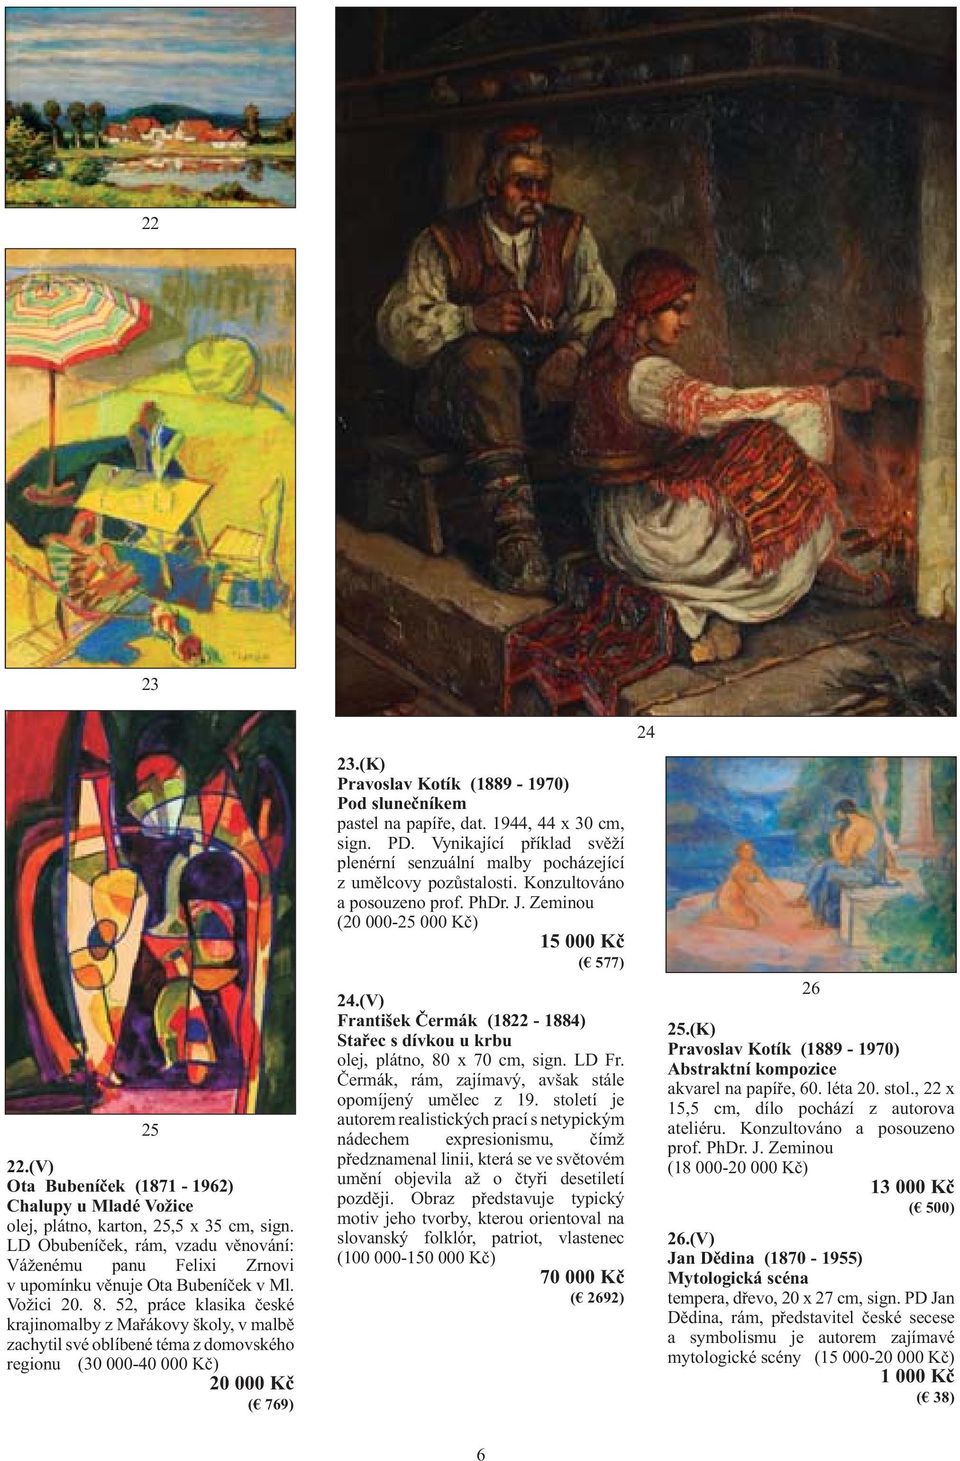 52, práce klasika české krajinomalby z Mařákovy školy, v malbě zachytil své oblíbené téma z domovského regionu (30 000-40 000 Kč) 20 000 Kč ( 769) 23.